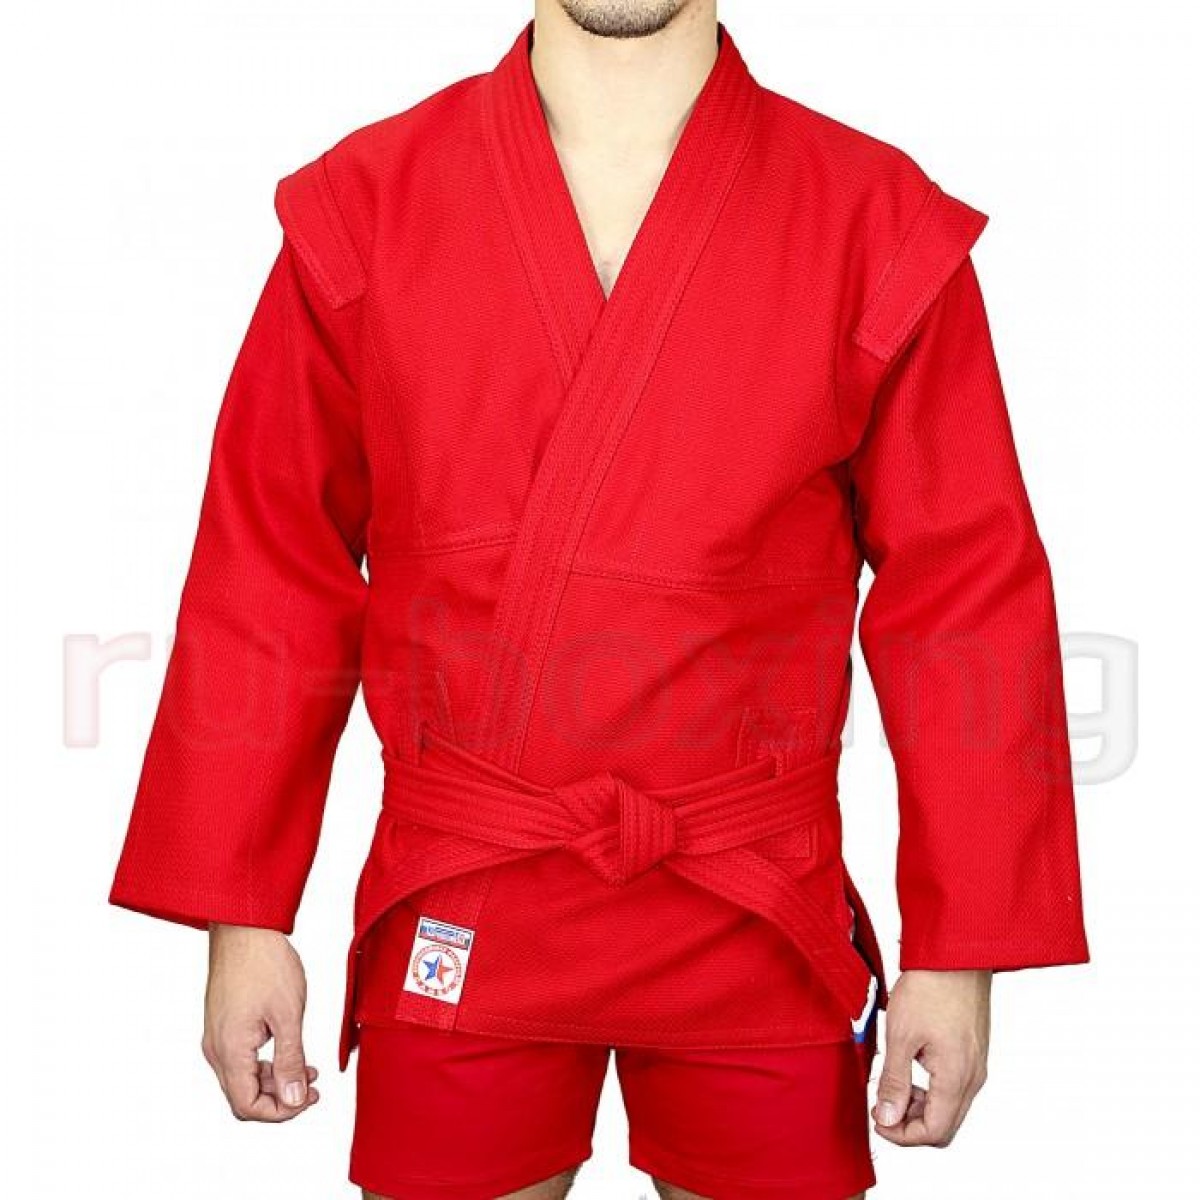 Куртка для самбо Атака размер 46 красная